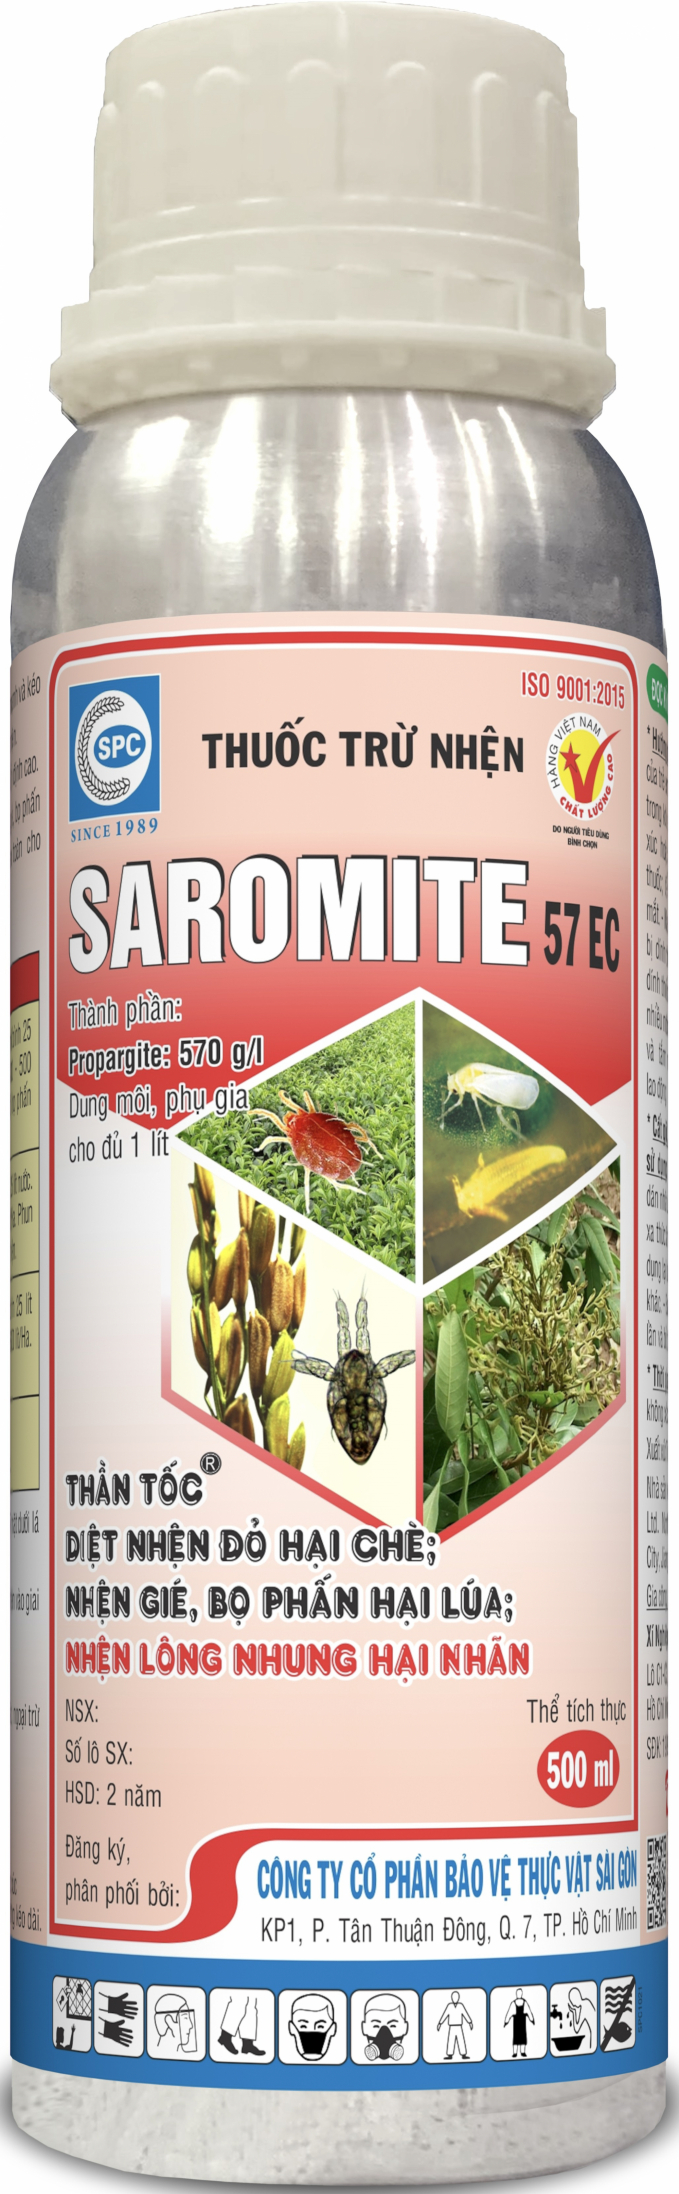 Thuốc trừ nhện Saromite 57EC của Công ty Cổ phần BVTV Sài Gòn.